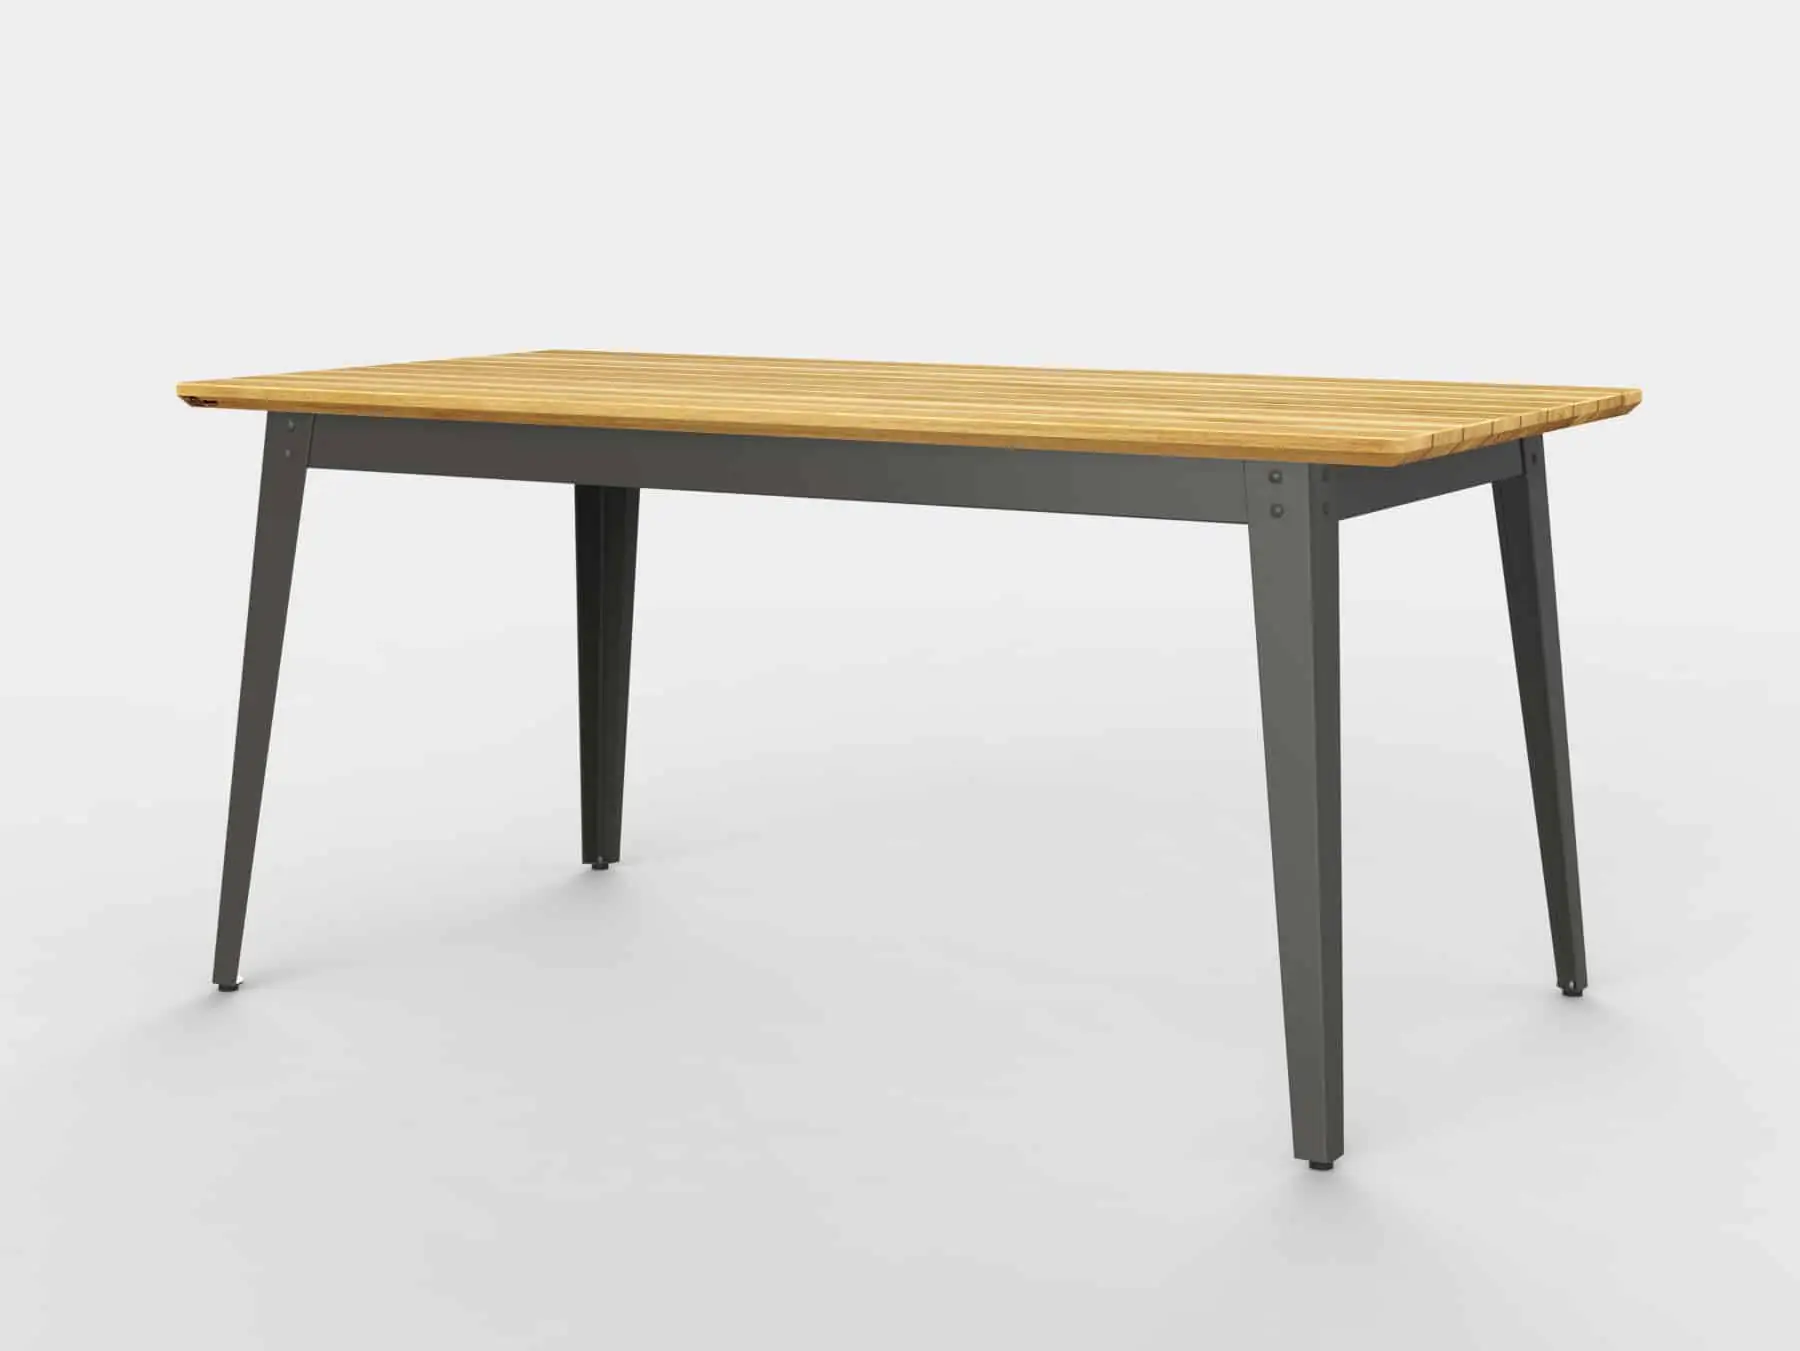 Freisteller Outdoor-Tisch aus Holz mit grauem Metallgestell.